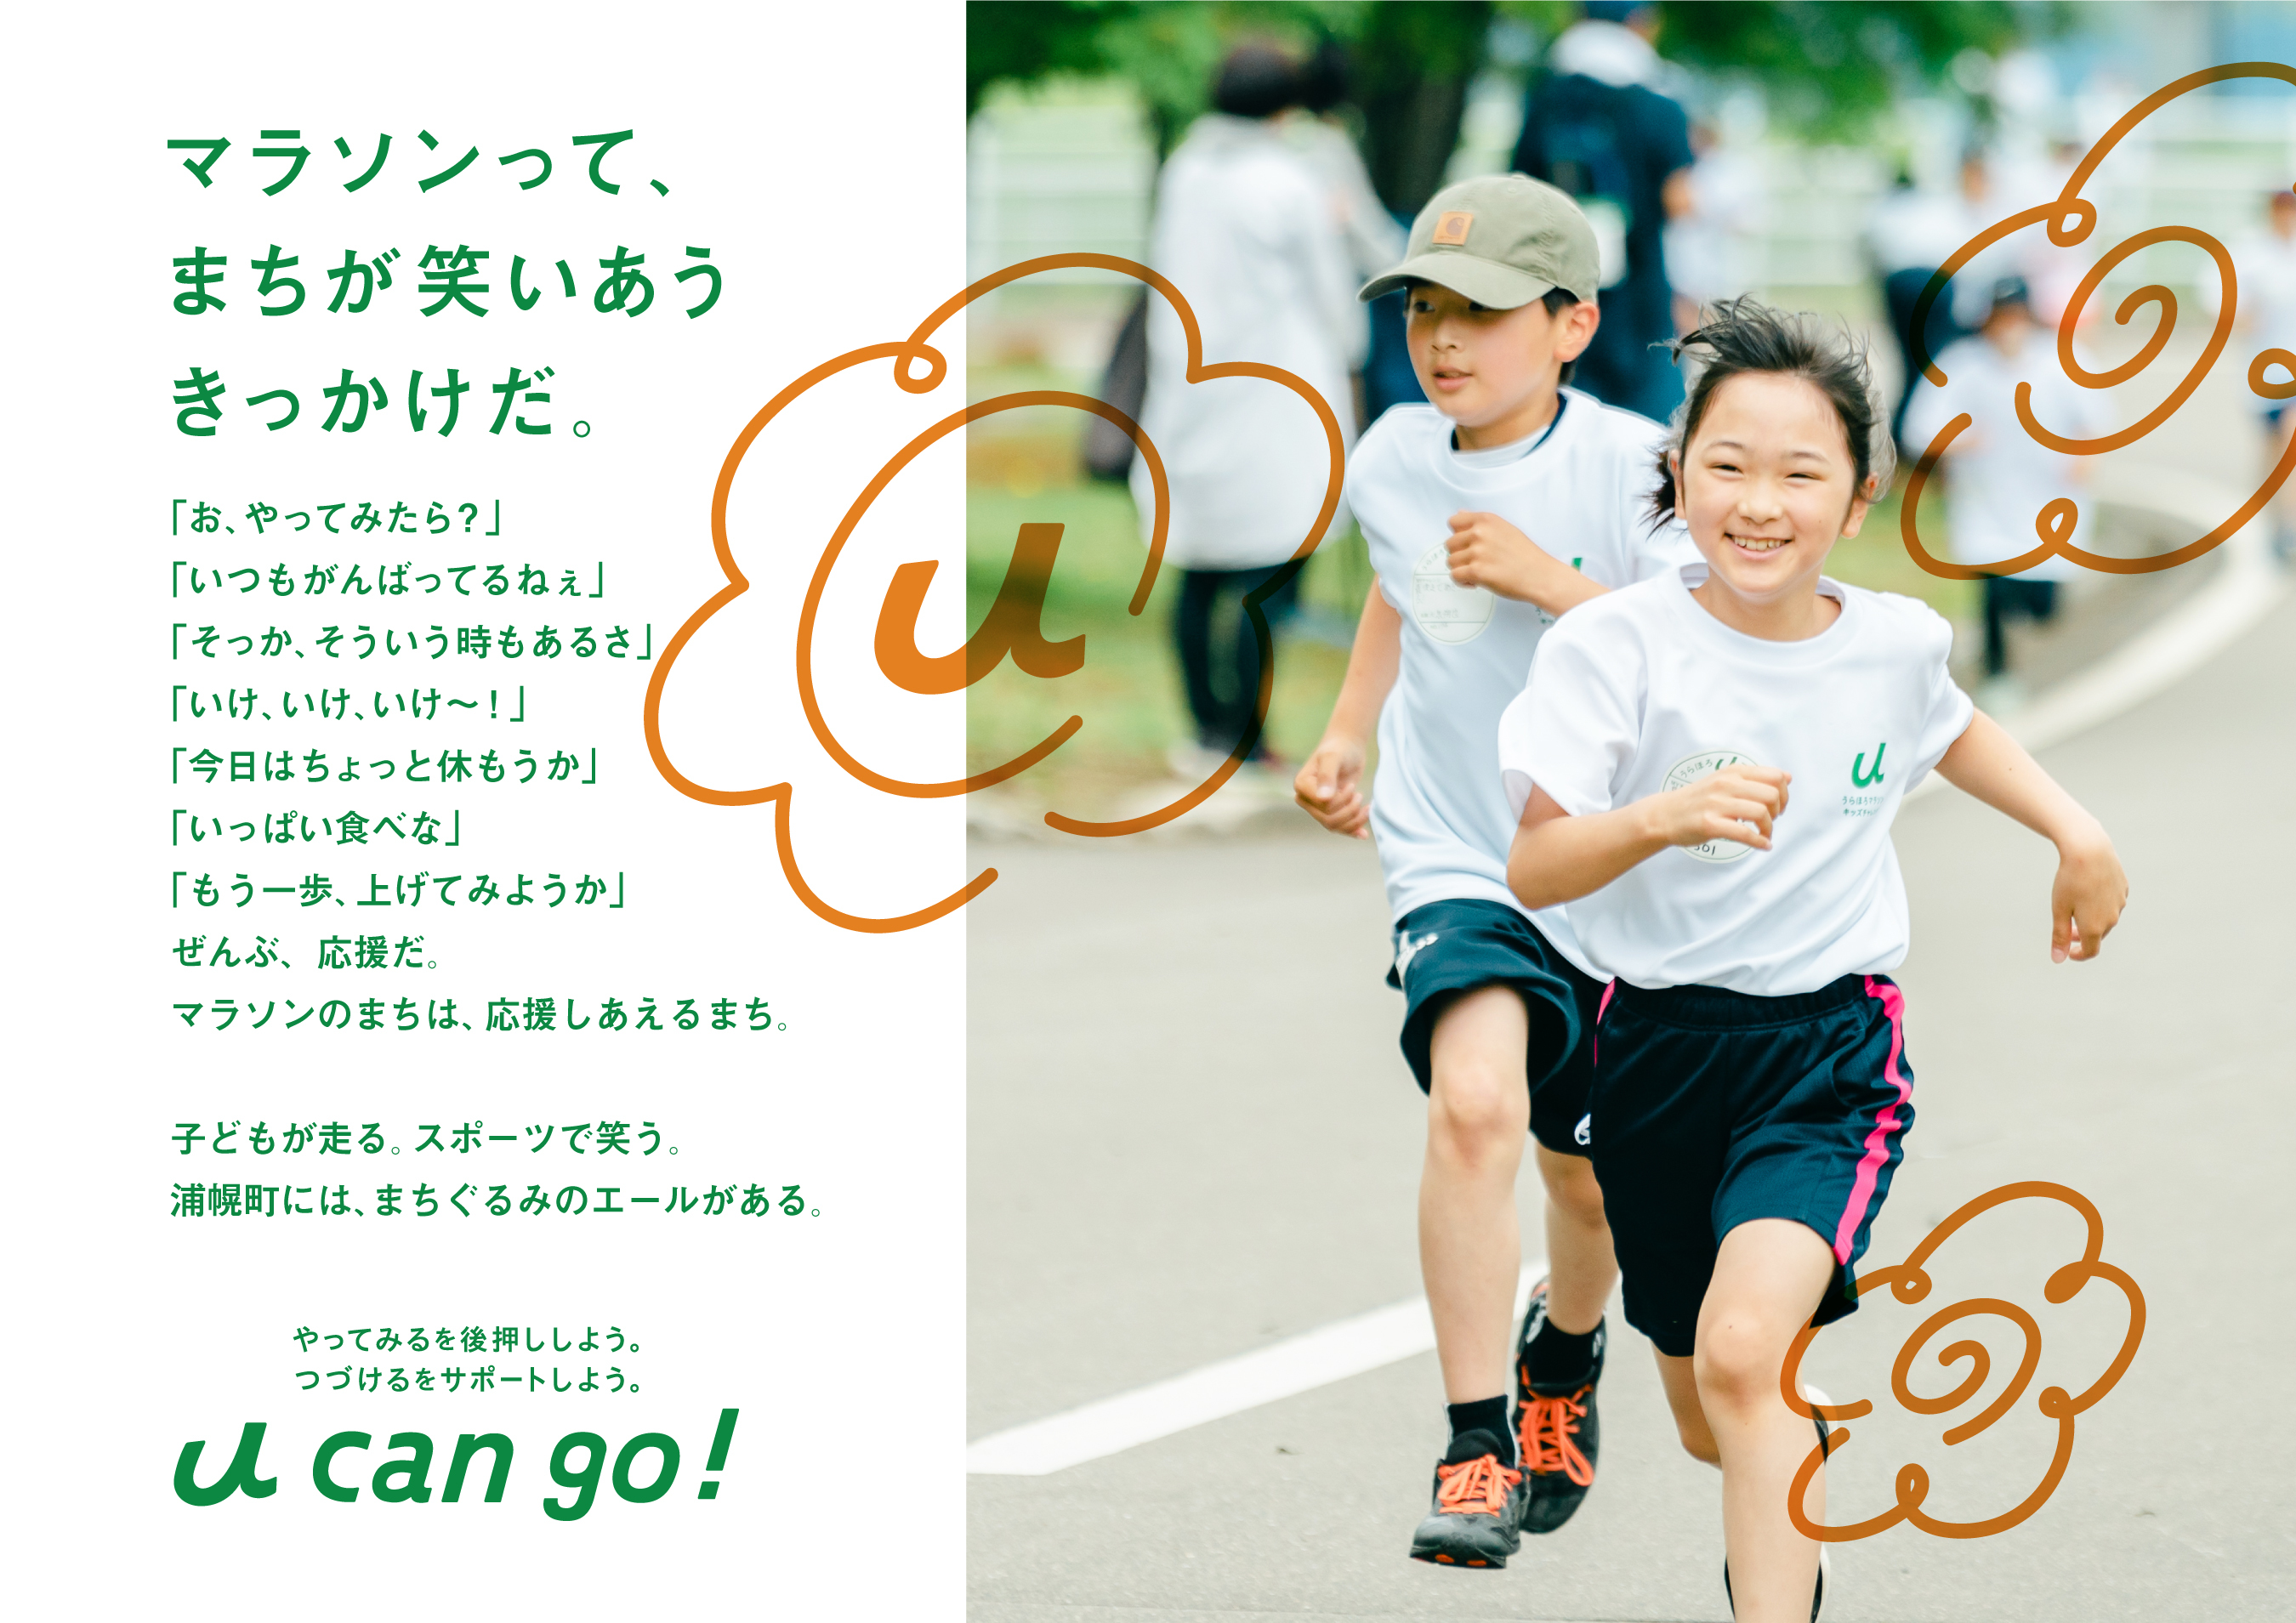 阪神タイガース ガールズフェスタ「TORACO DAY」
メインビジュアルの決定及びスペシャルゲストについて